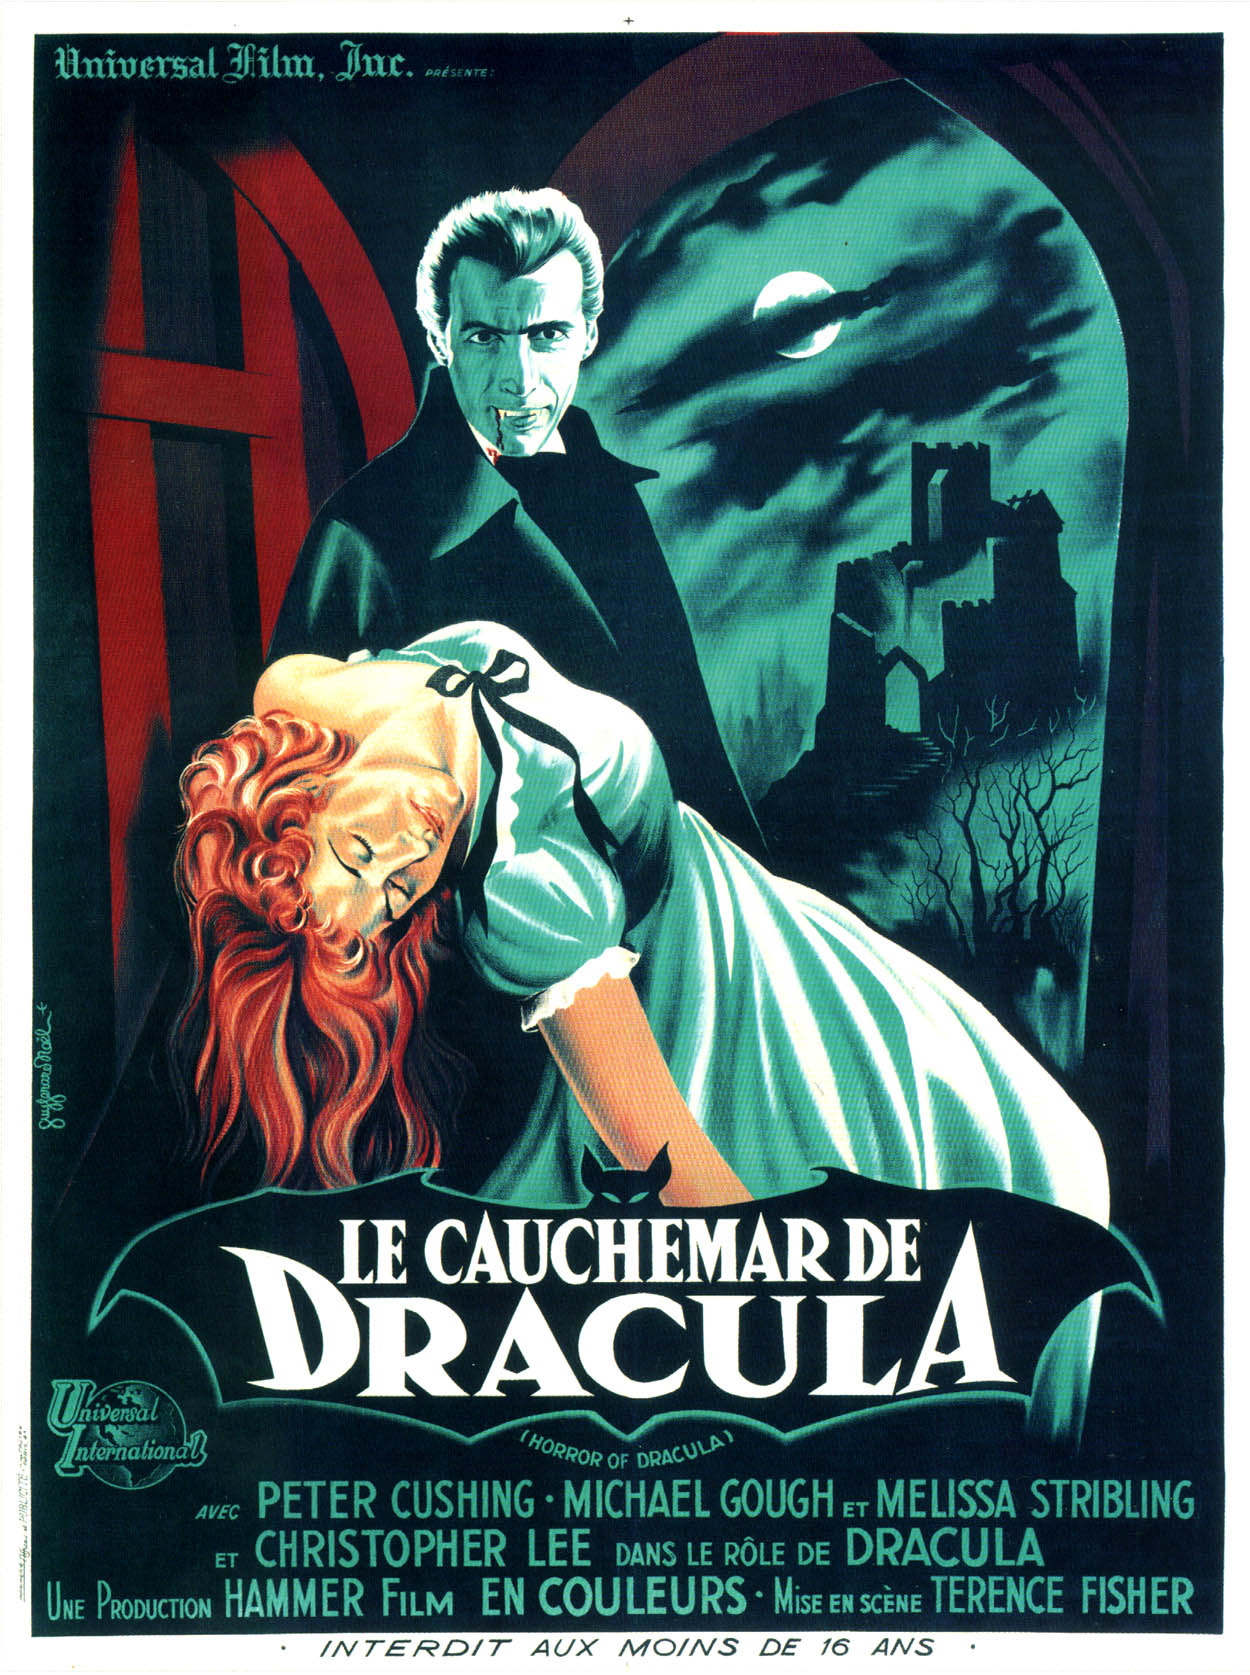 DSS presents Le-Cauchemar-de-Dracula